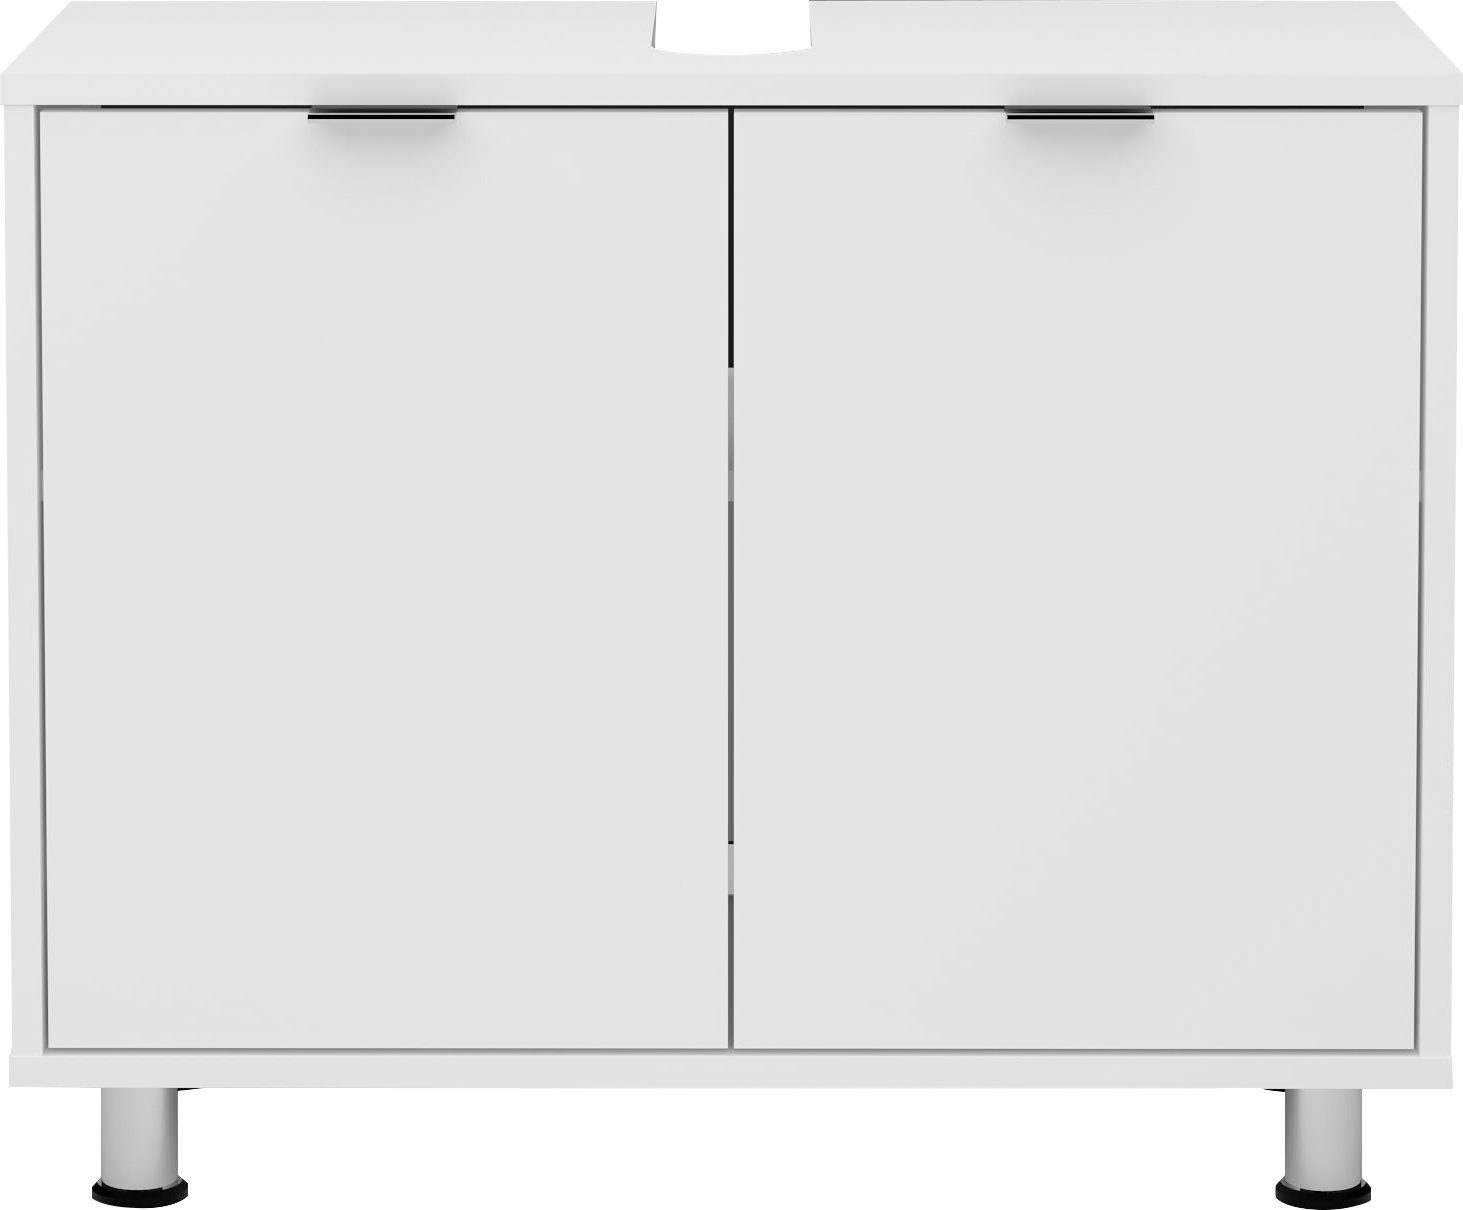 FMD Waschbeckenunterschrank Zamora Breite 70 cm | Spiegelschränke